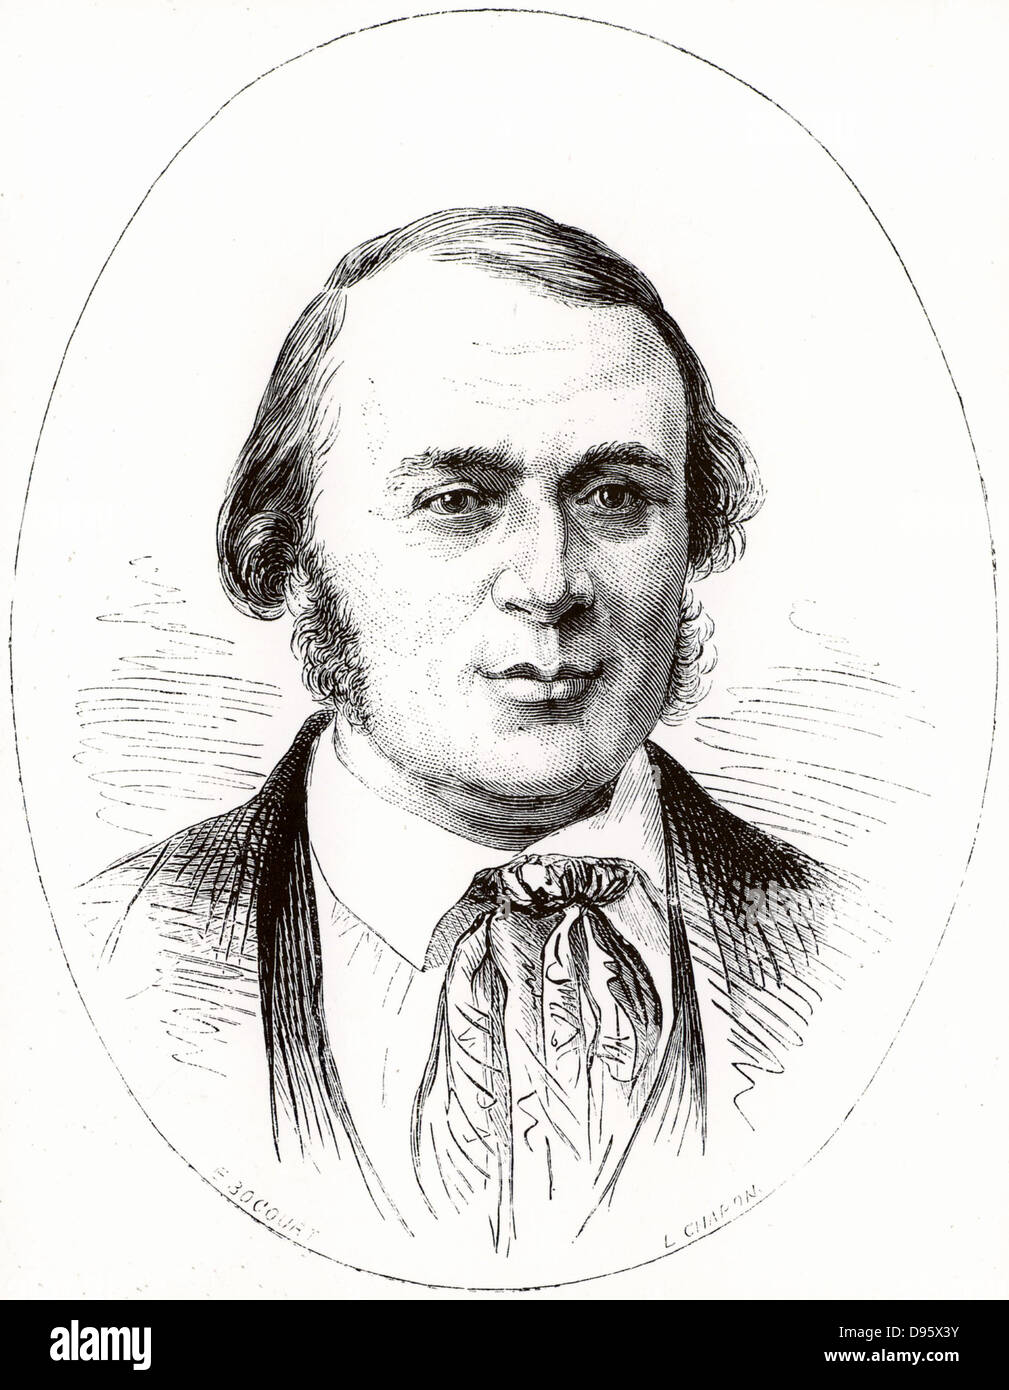 (Jean ) Louis (Rodolphe) Agassiz (1807-1873), naturaliste américain né en Suisse et glaciologue à l'âge de 40 ans. Gravure tirée de 'La nature' (Paris, 1874). Banque D'Images